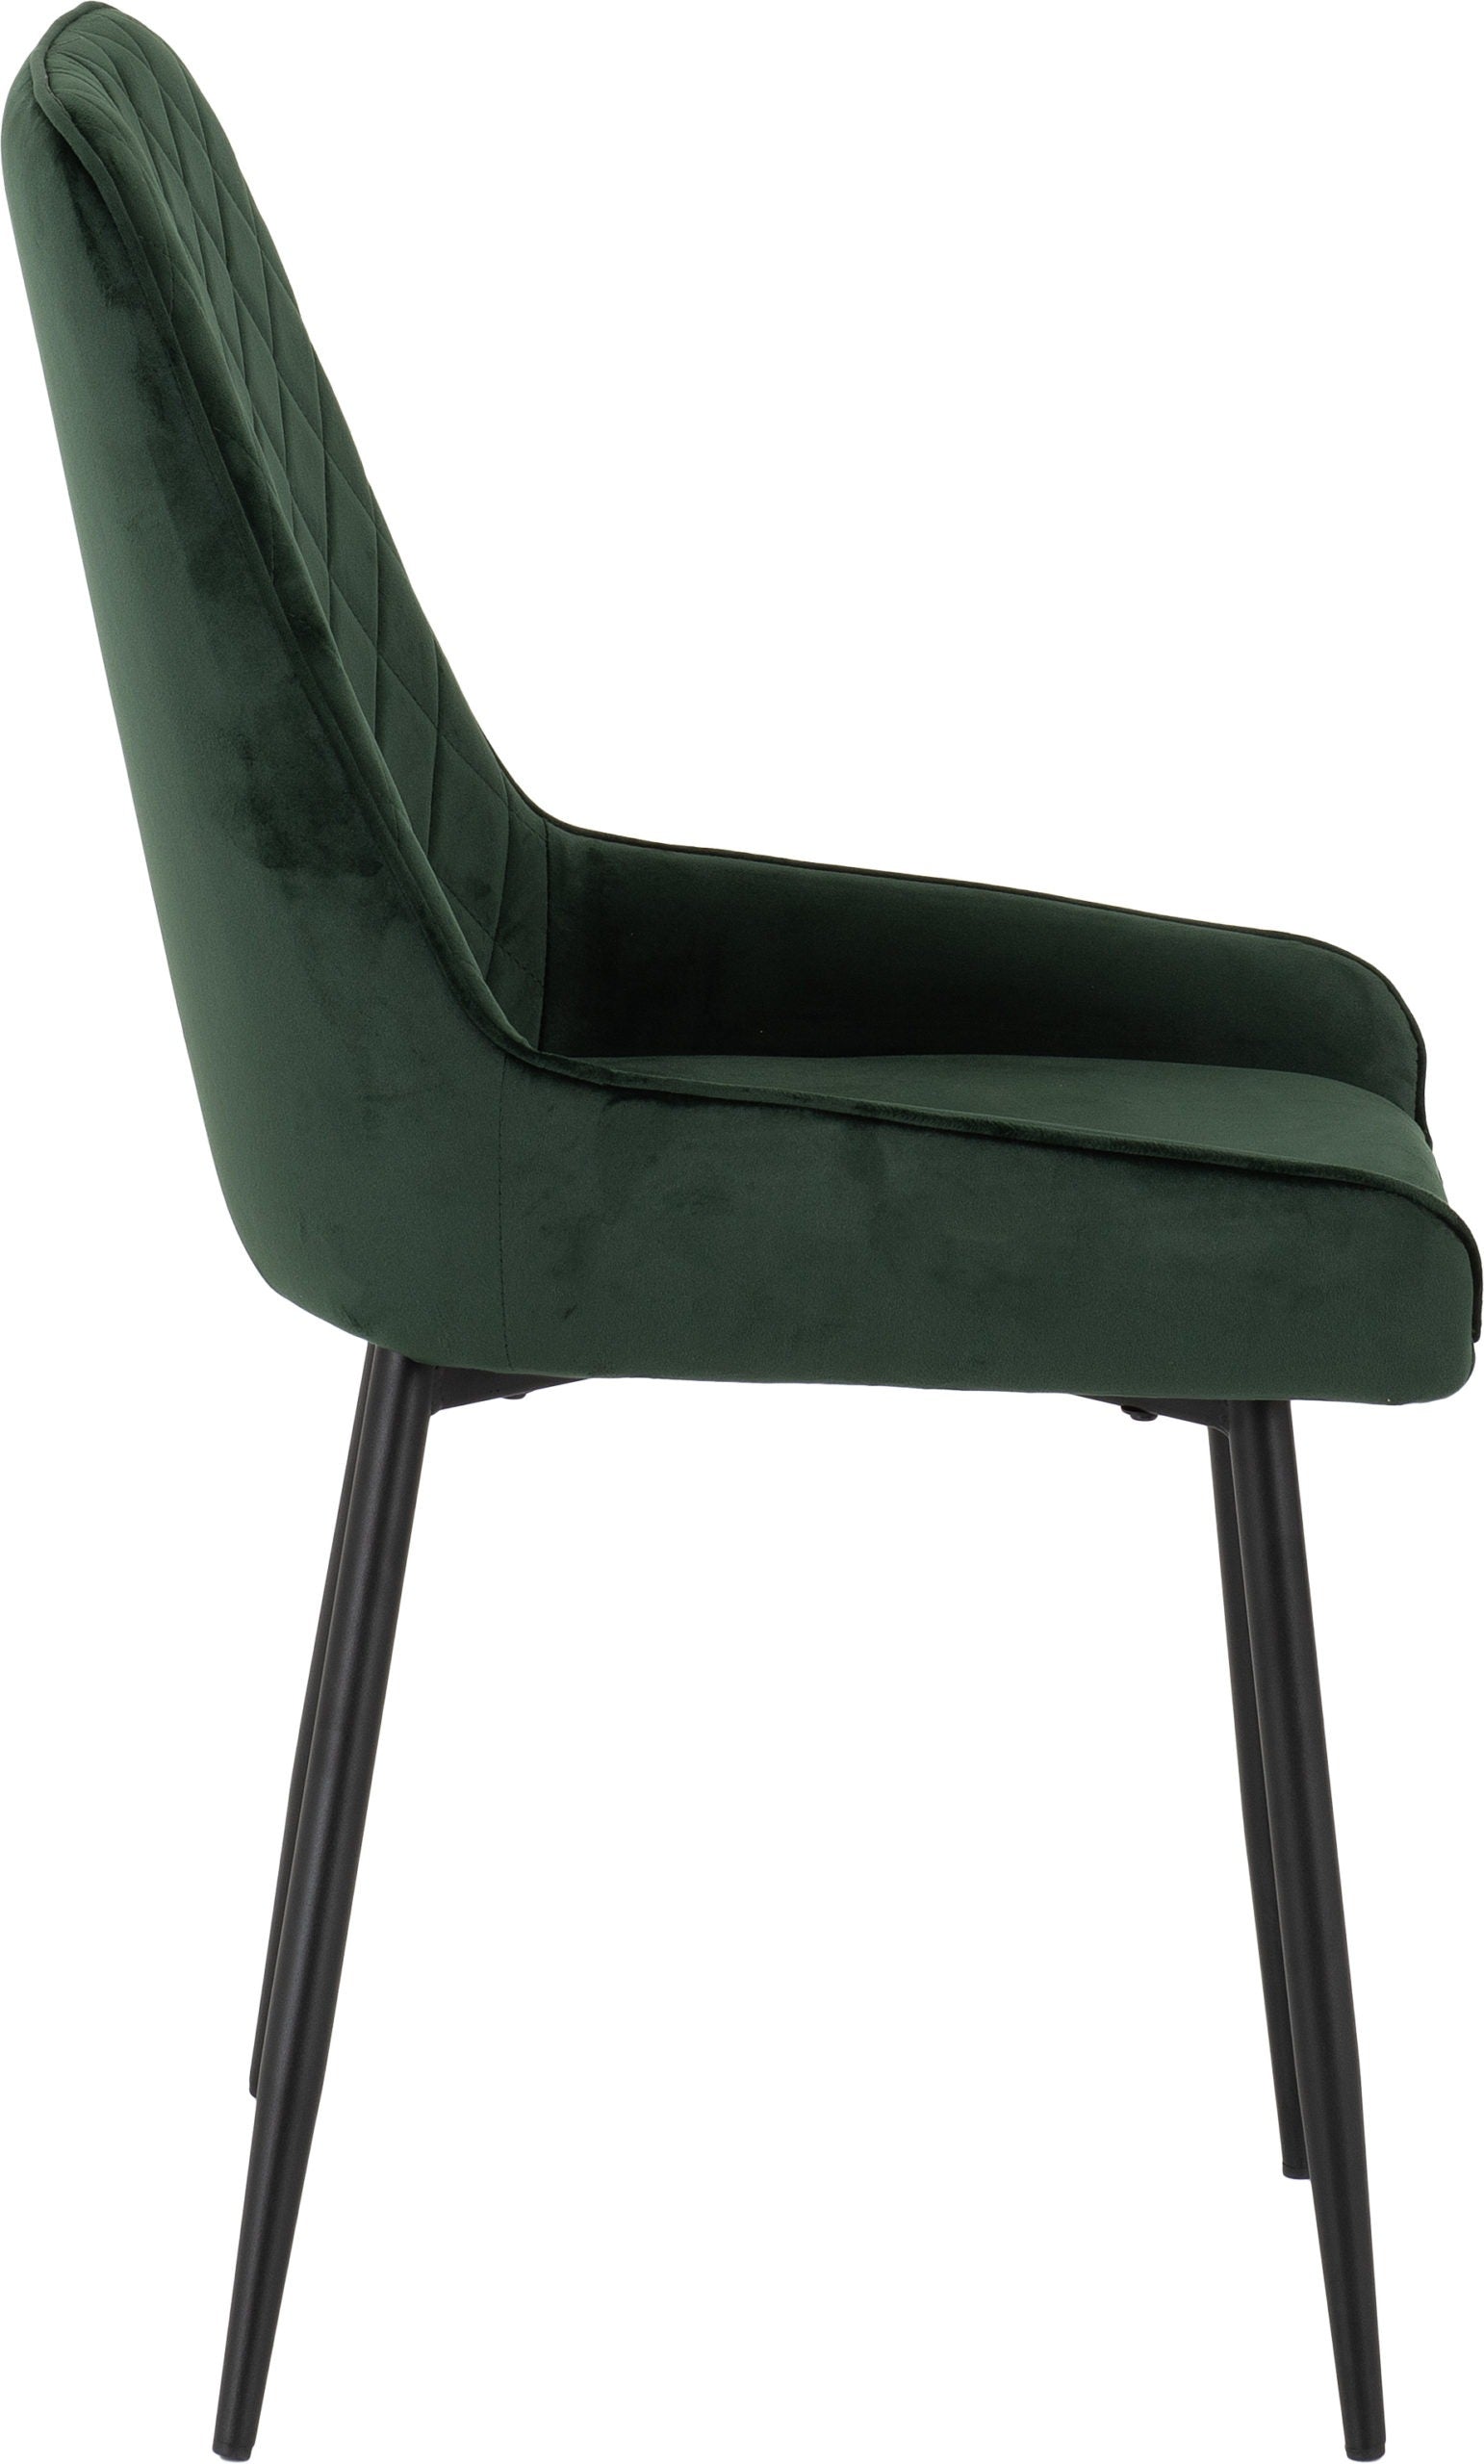 Avery Chair Emerald Green Velvet - The Right Buy Store